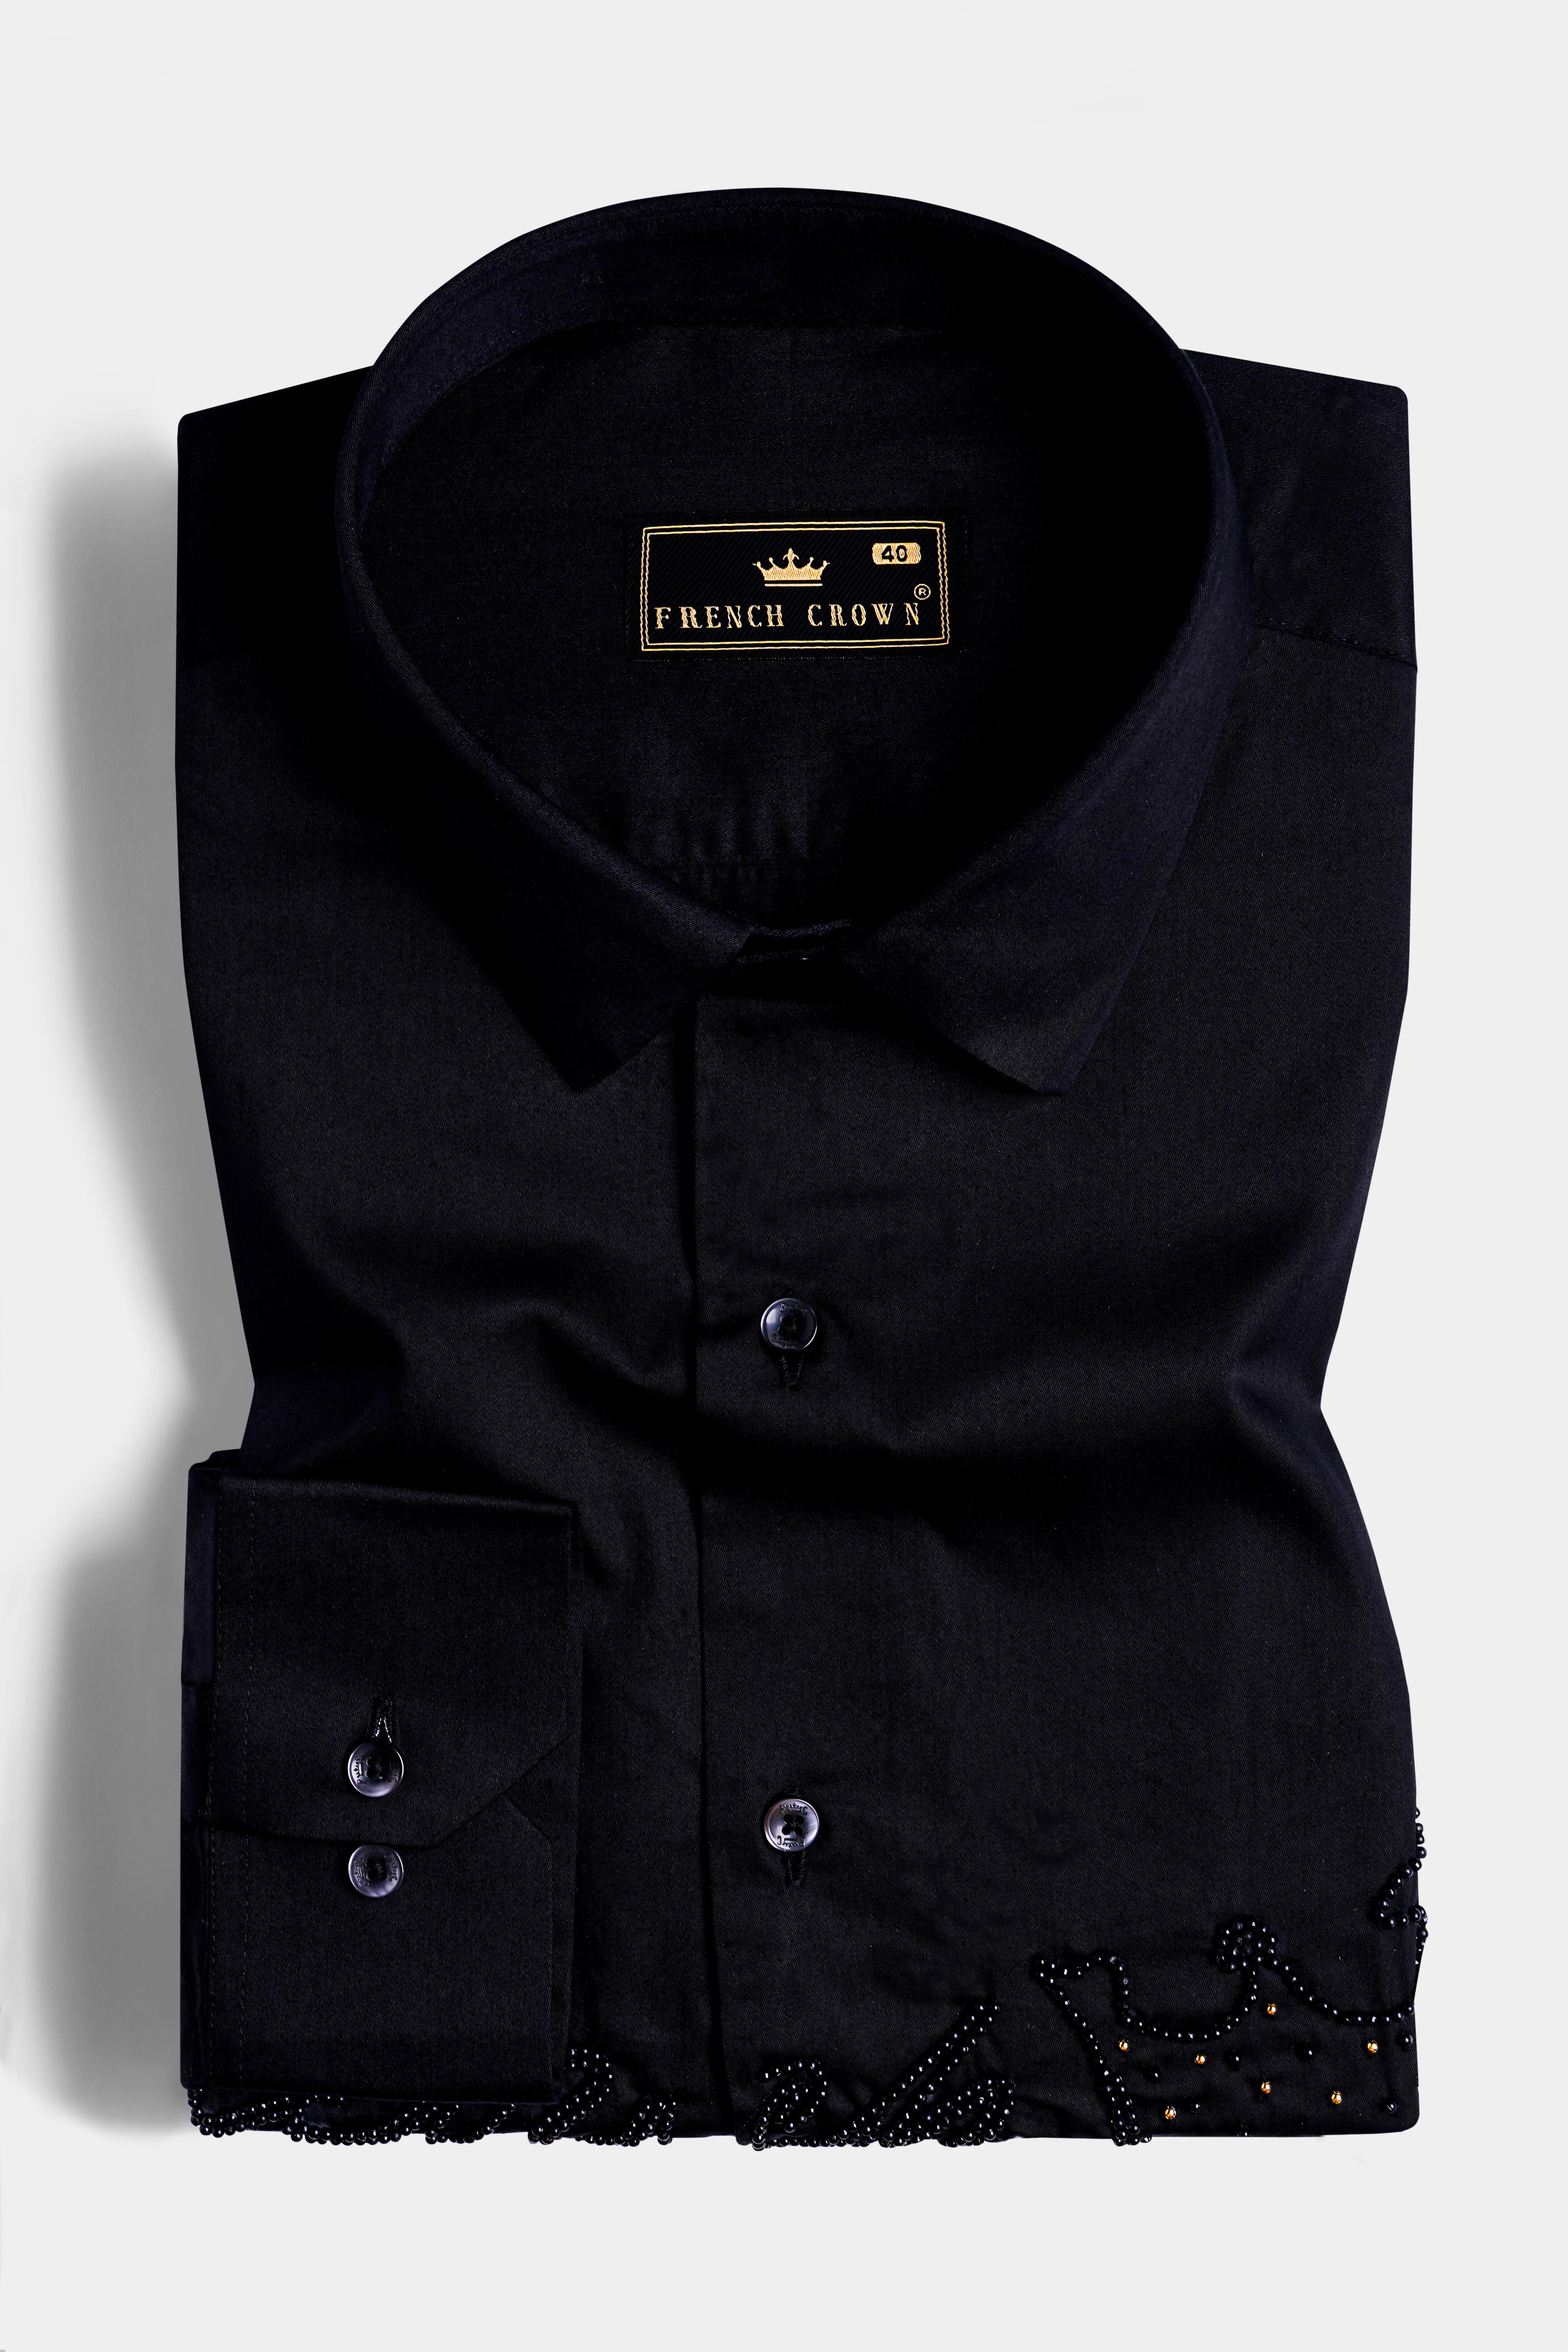 Jade Black Beads Handwork Subtle Sheen Super Soft Premium Cotton Designer Shirt